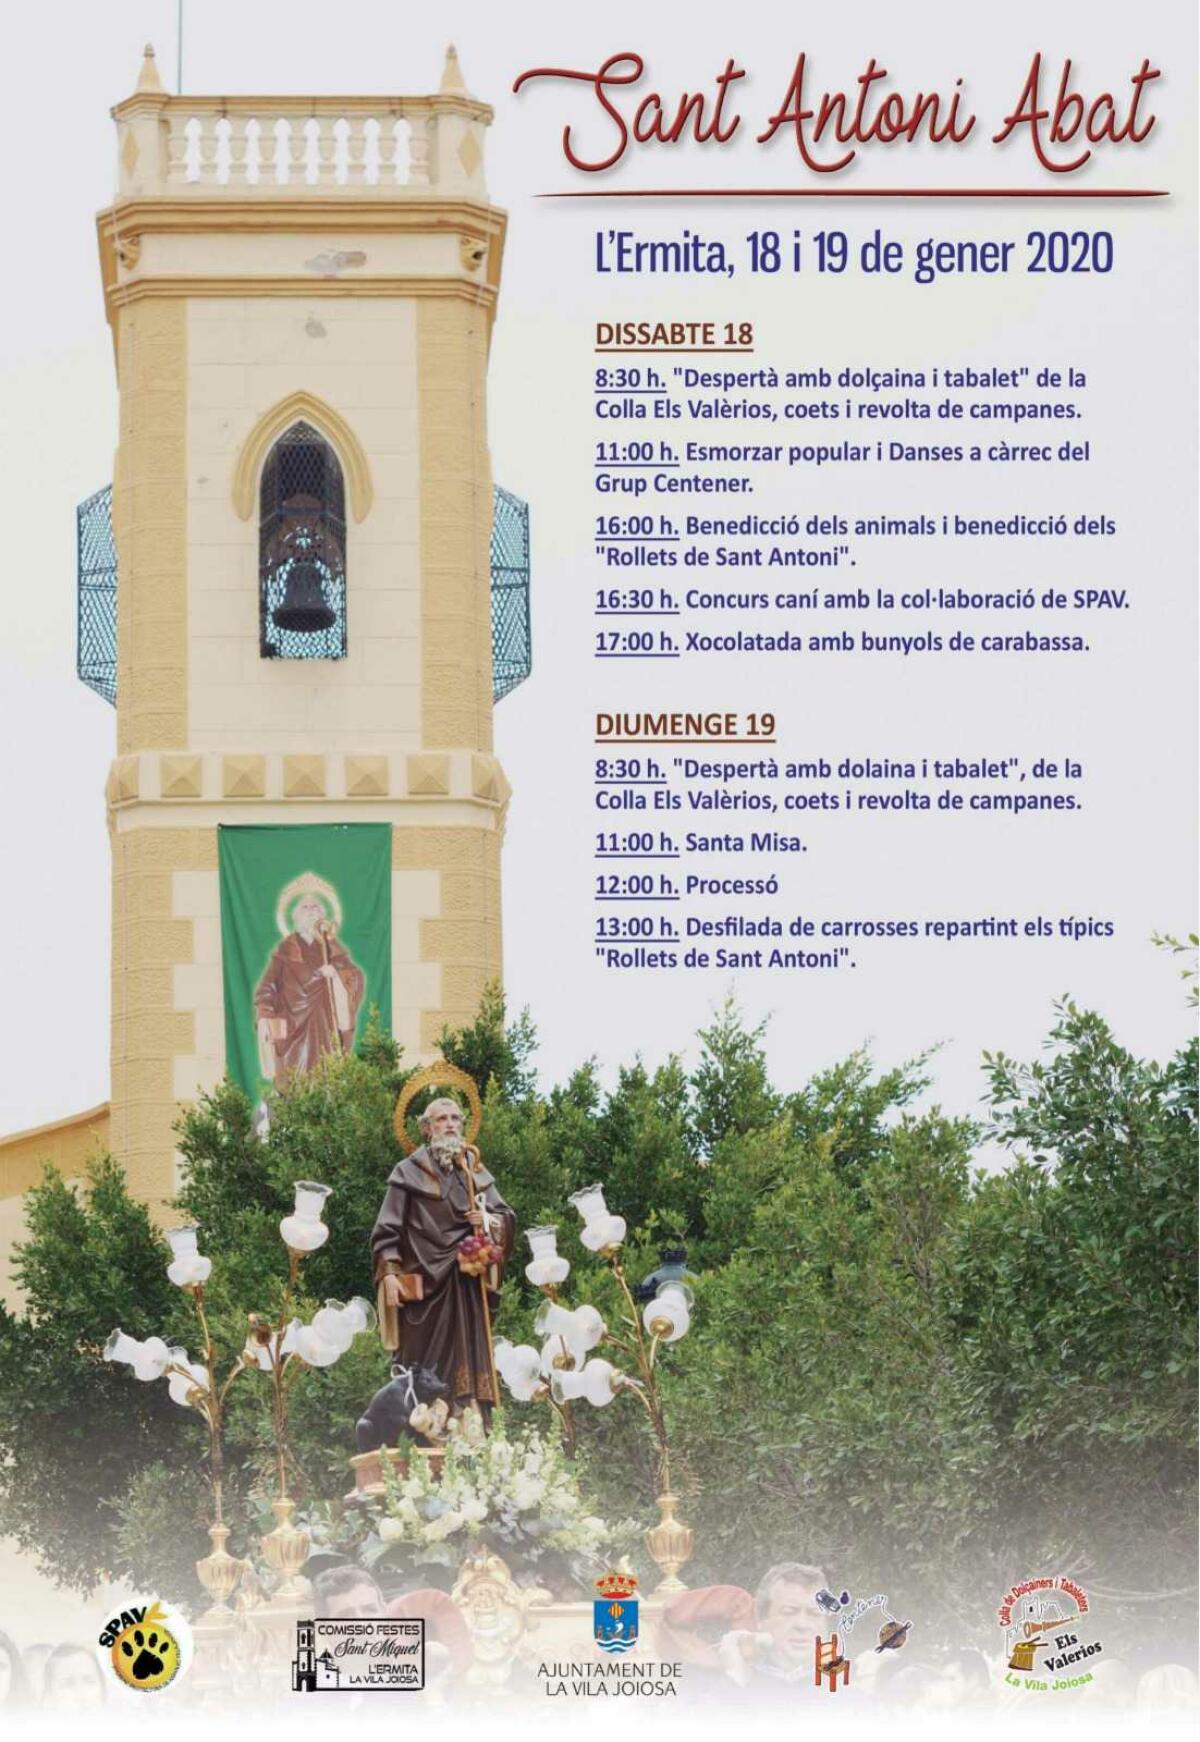 La Ermita de la Vila Joiosa celebra las fiestas de Sant Antoni Abat el 18 y 19 de enero